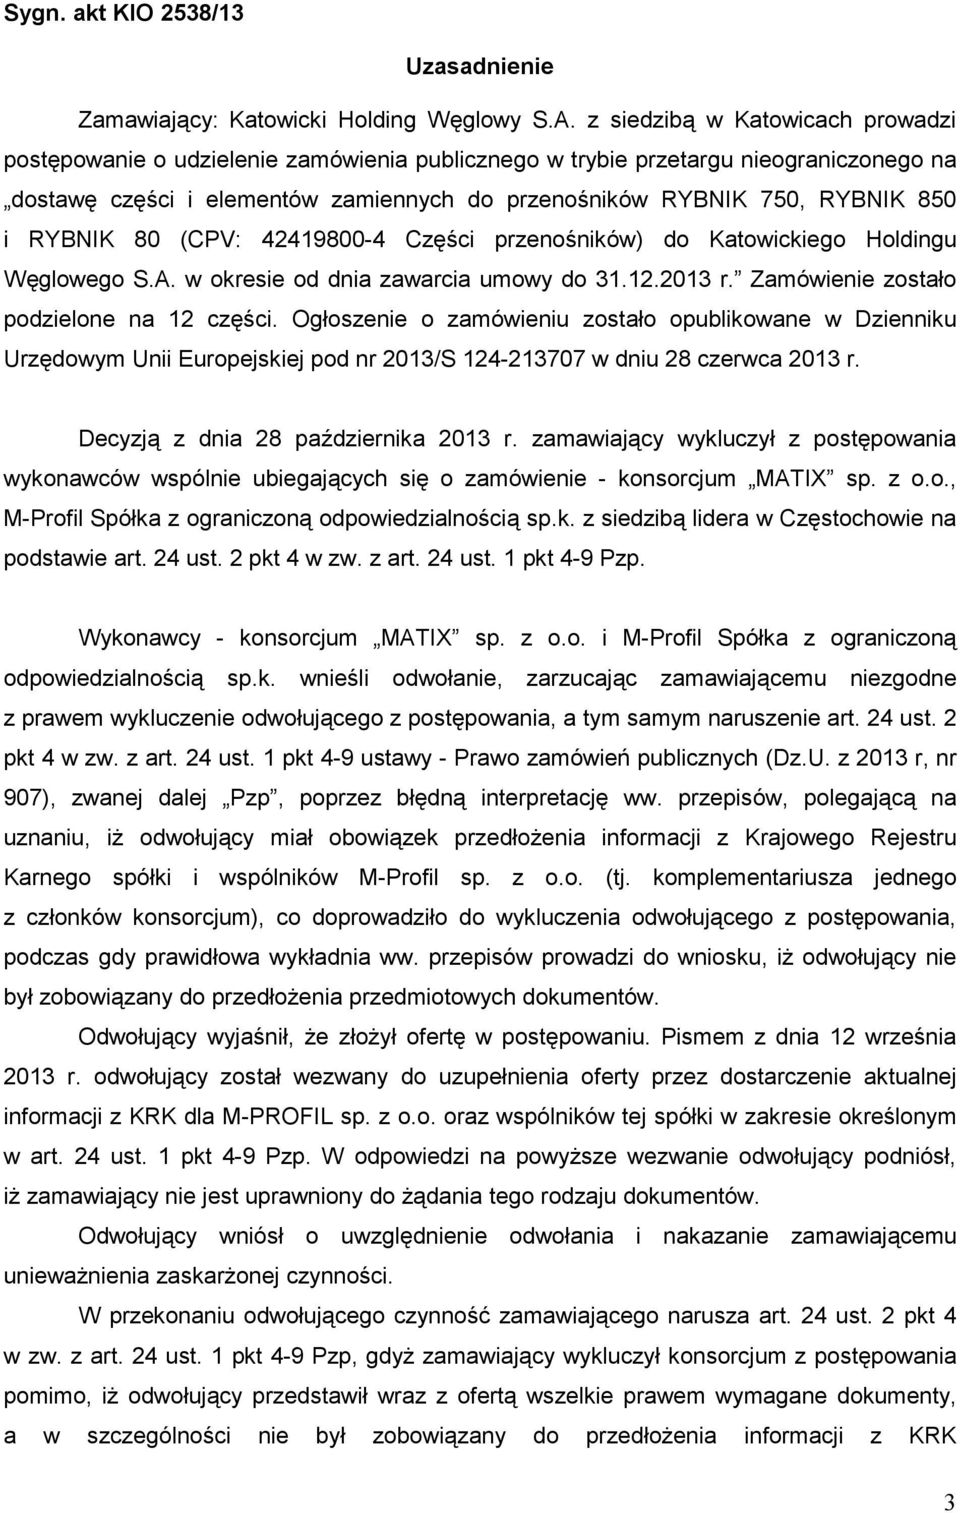 RYBNIK 80 (CPV: 42419800-4 Części przenośników) do Katowickiego Holdingu Węglowego S.A. w okresie od dnia zawarcia umowy do 31.12.2013 r. Zamówienie zostało podzielone na 12 części.